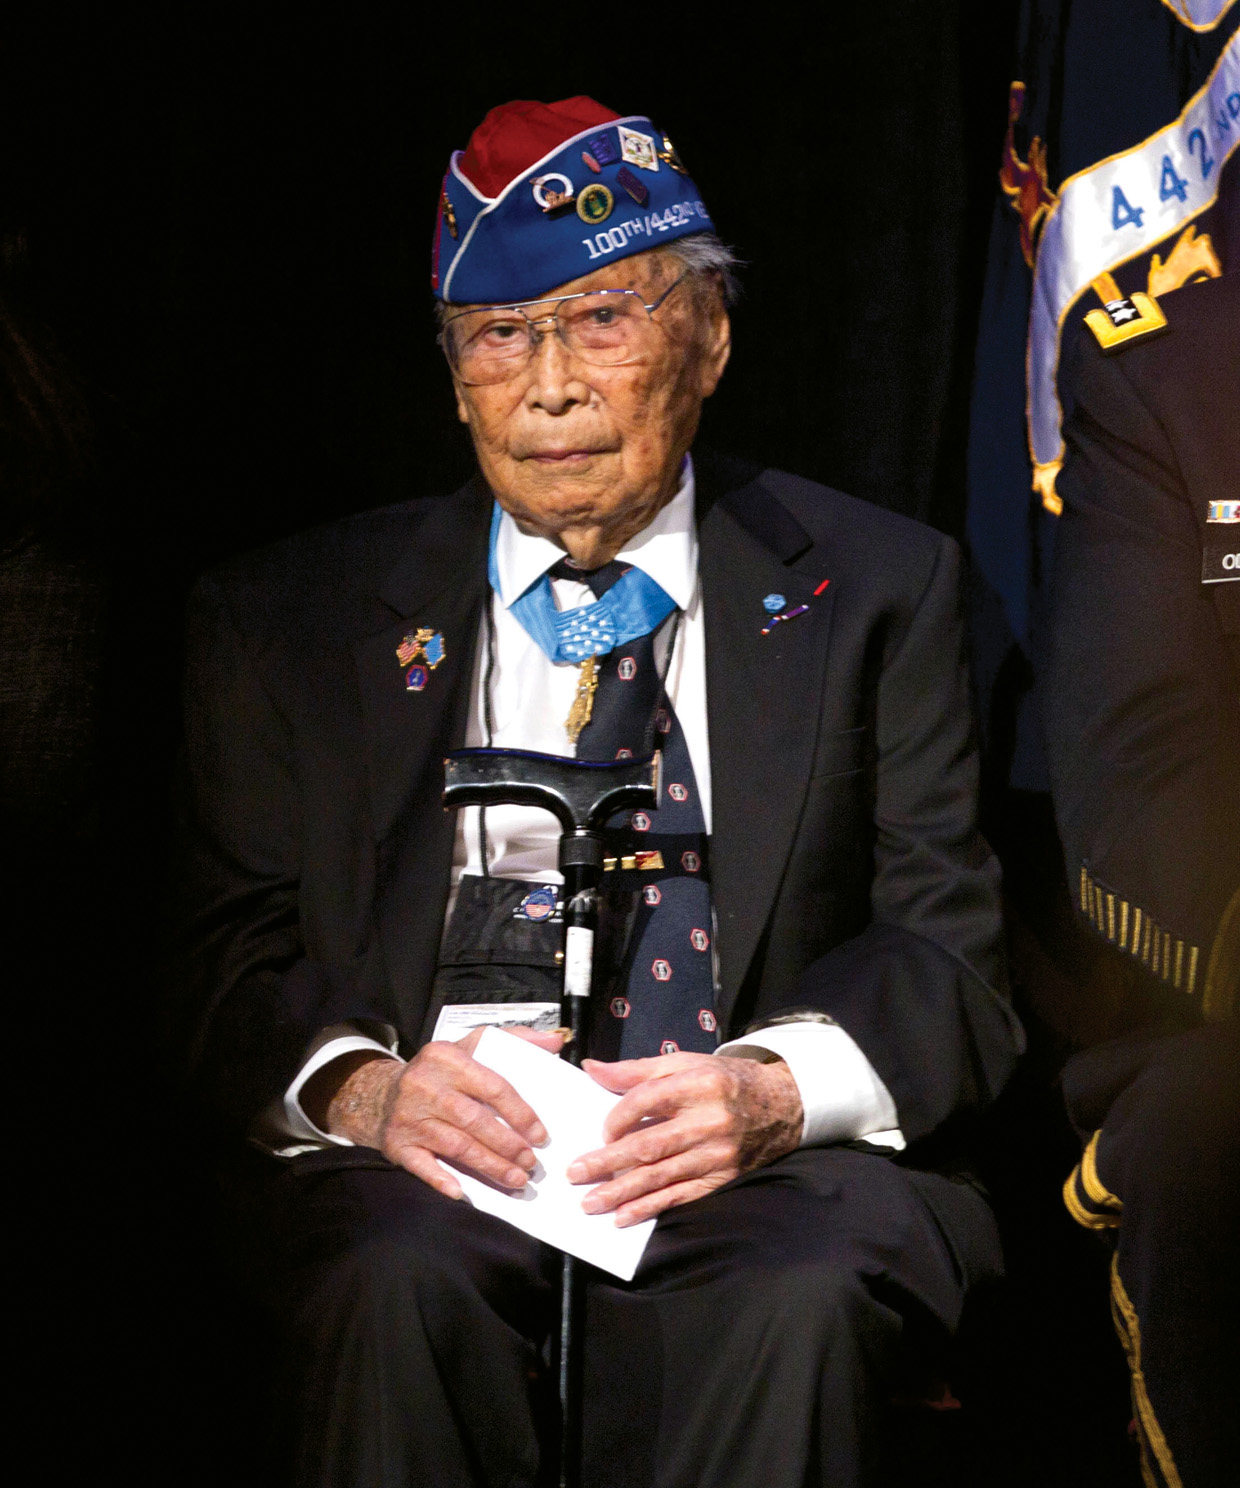 乔Sakato获得了荣誉勋章勇敢在法国但断言,“我不是英雄。”他在2015年去世,享年94岁。